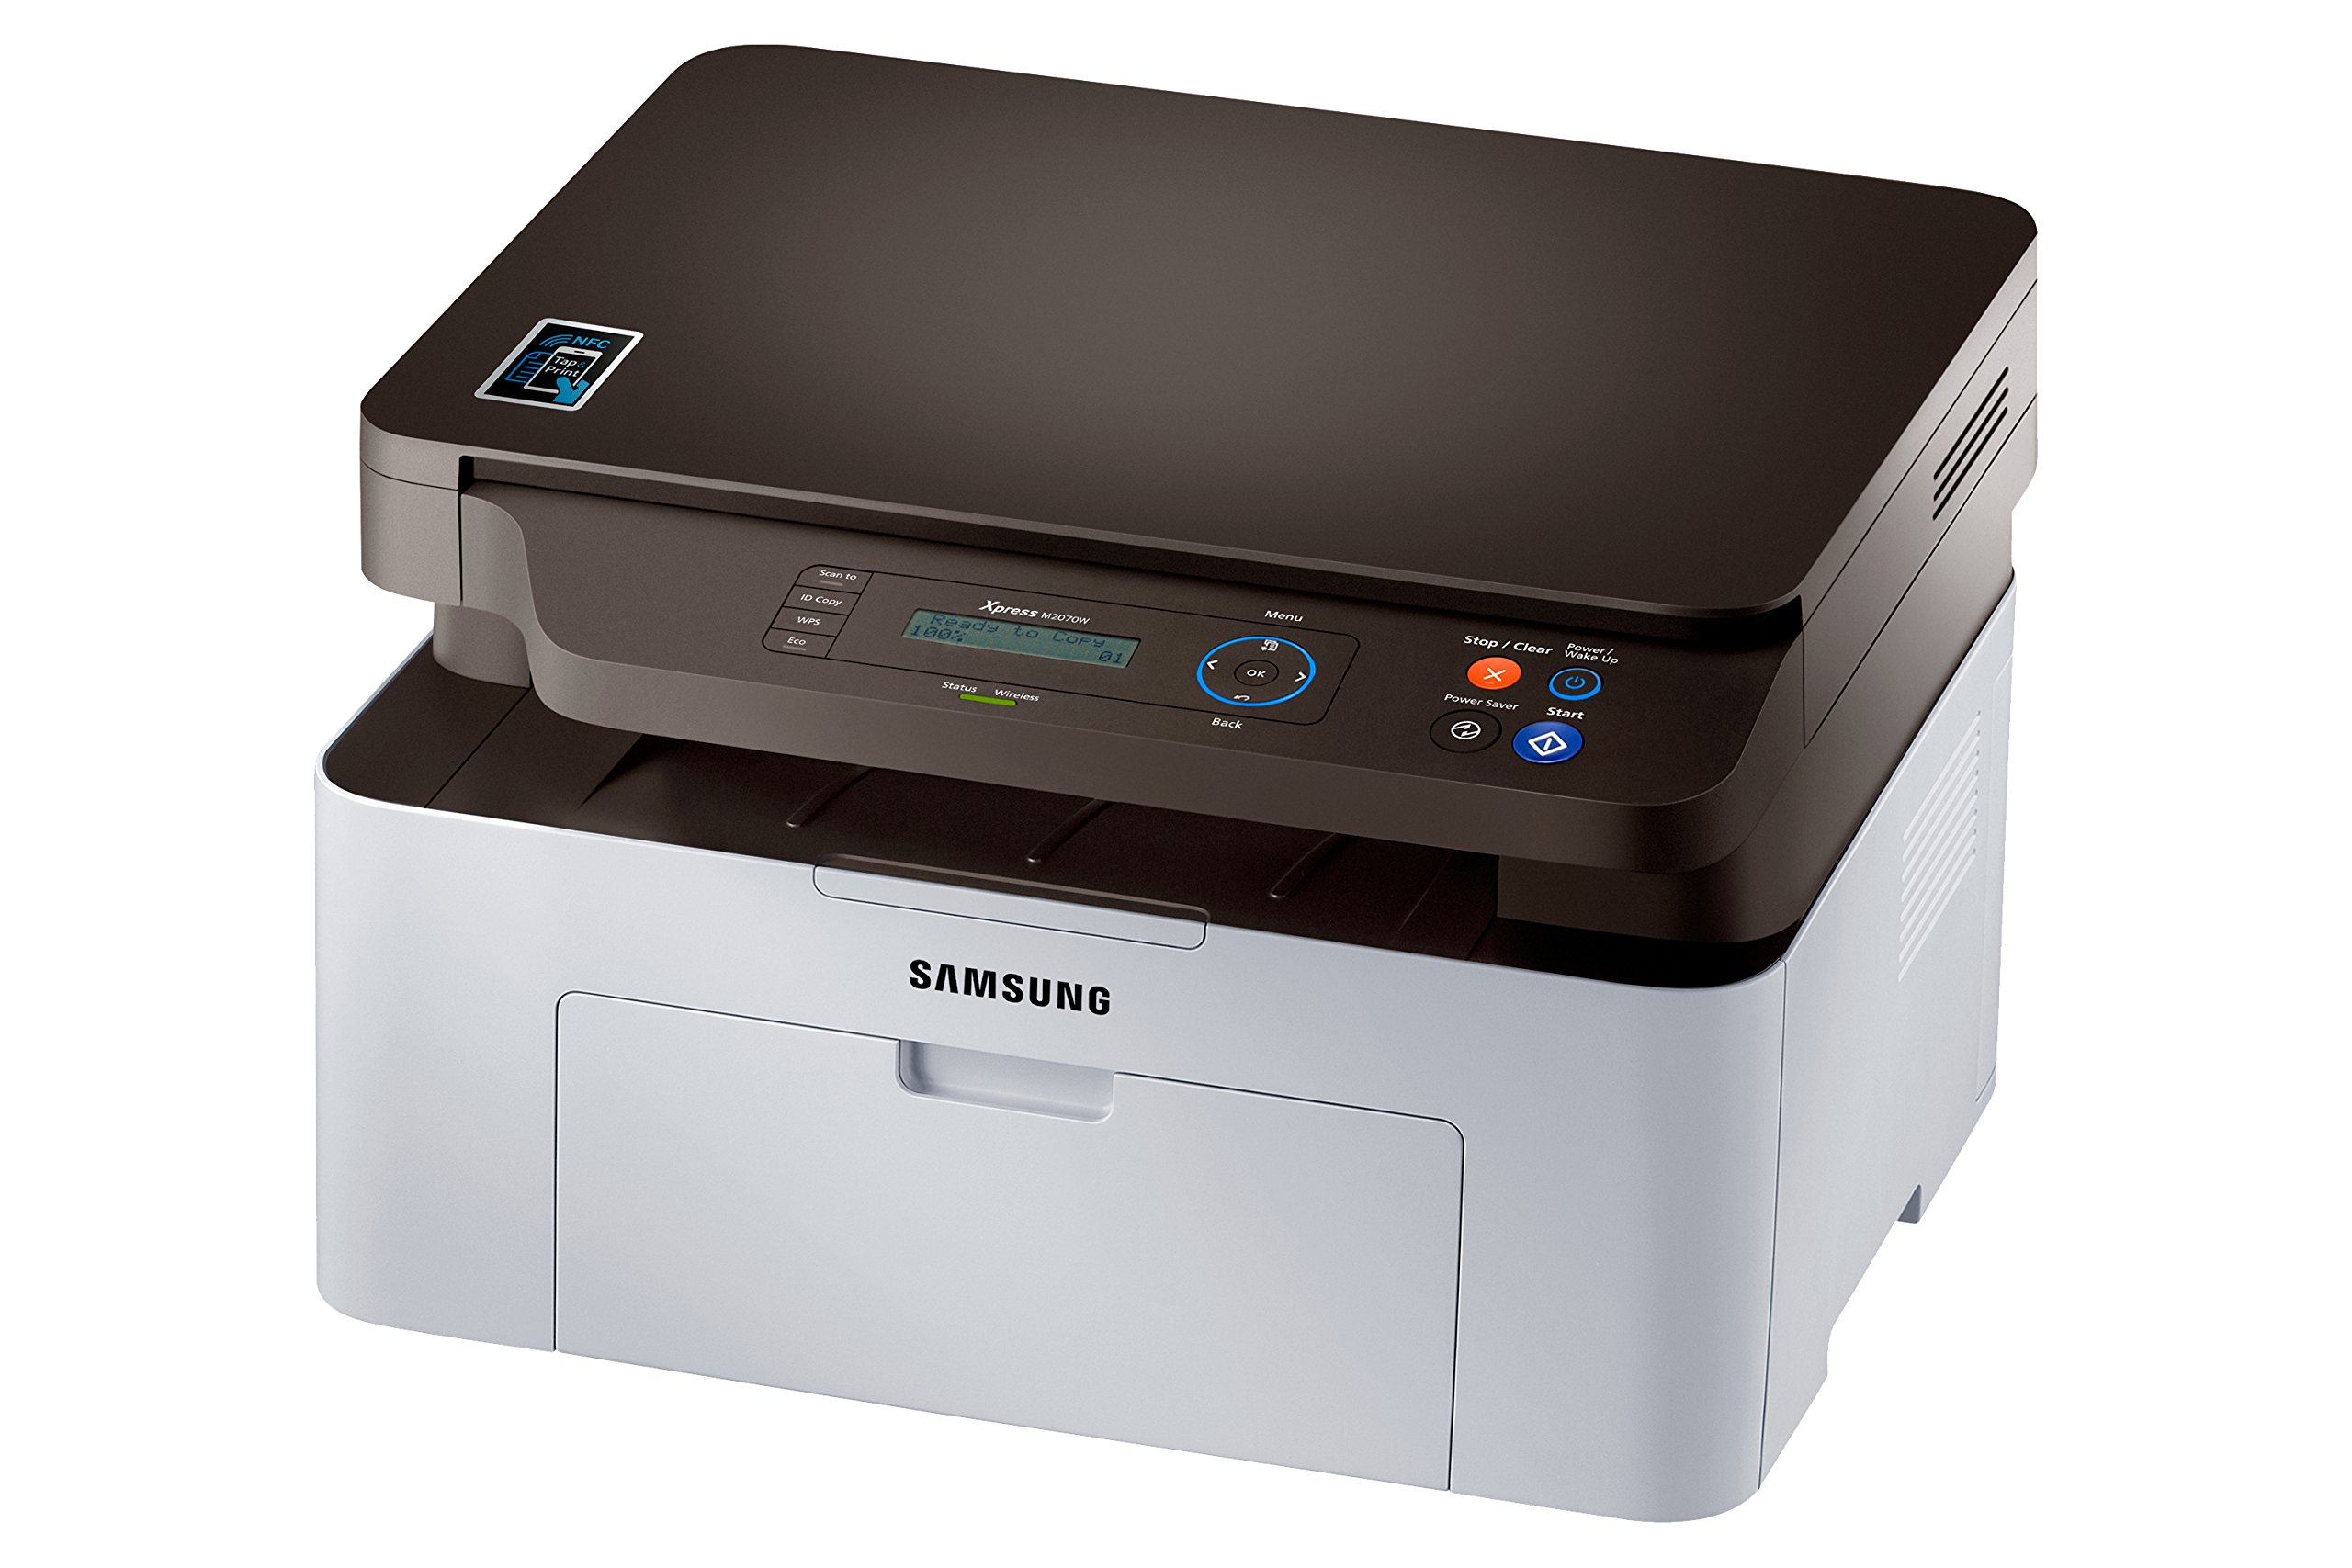 Scanner Samsung